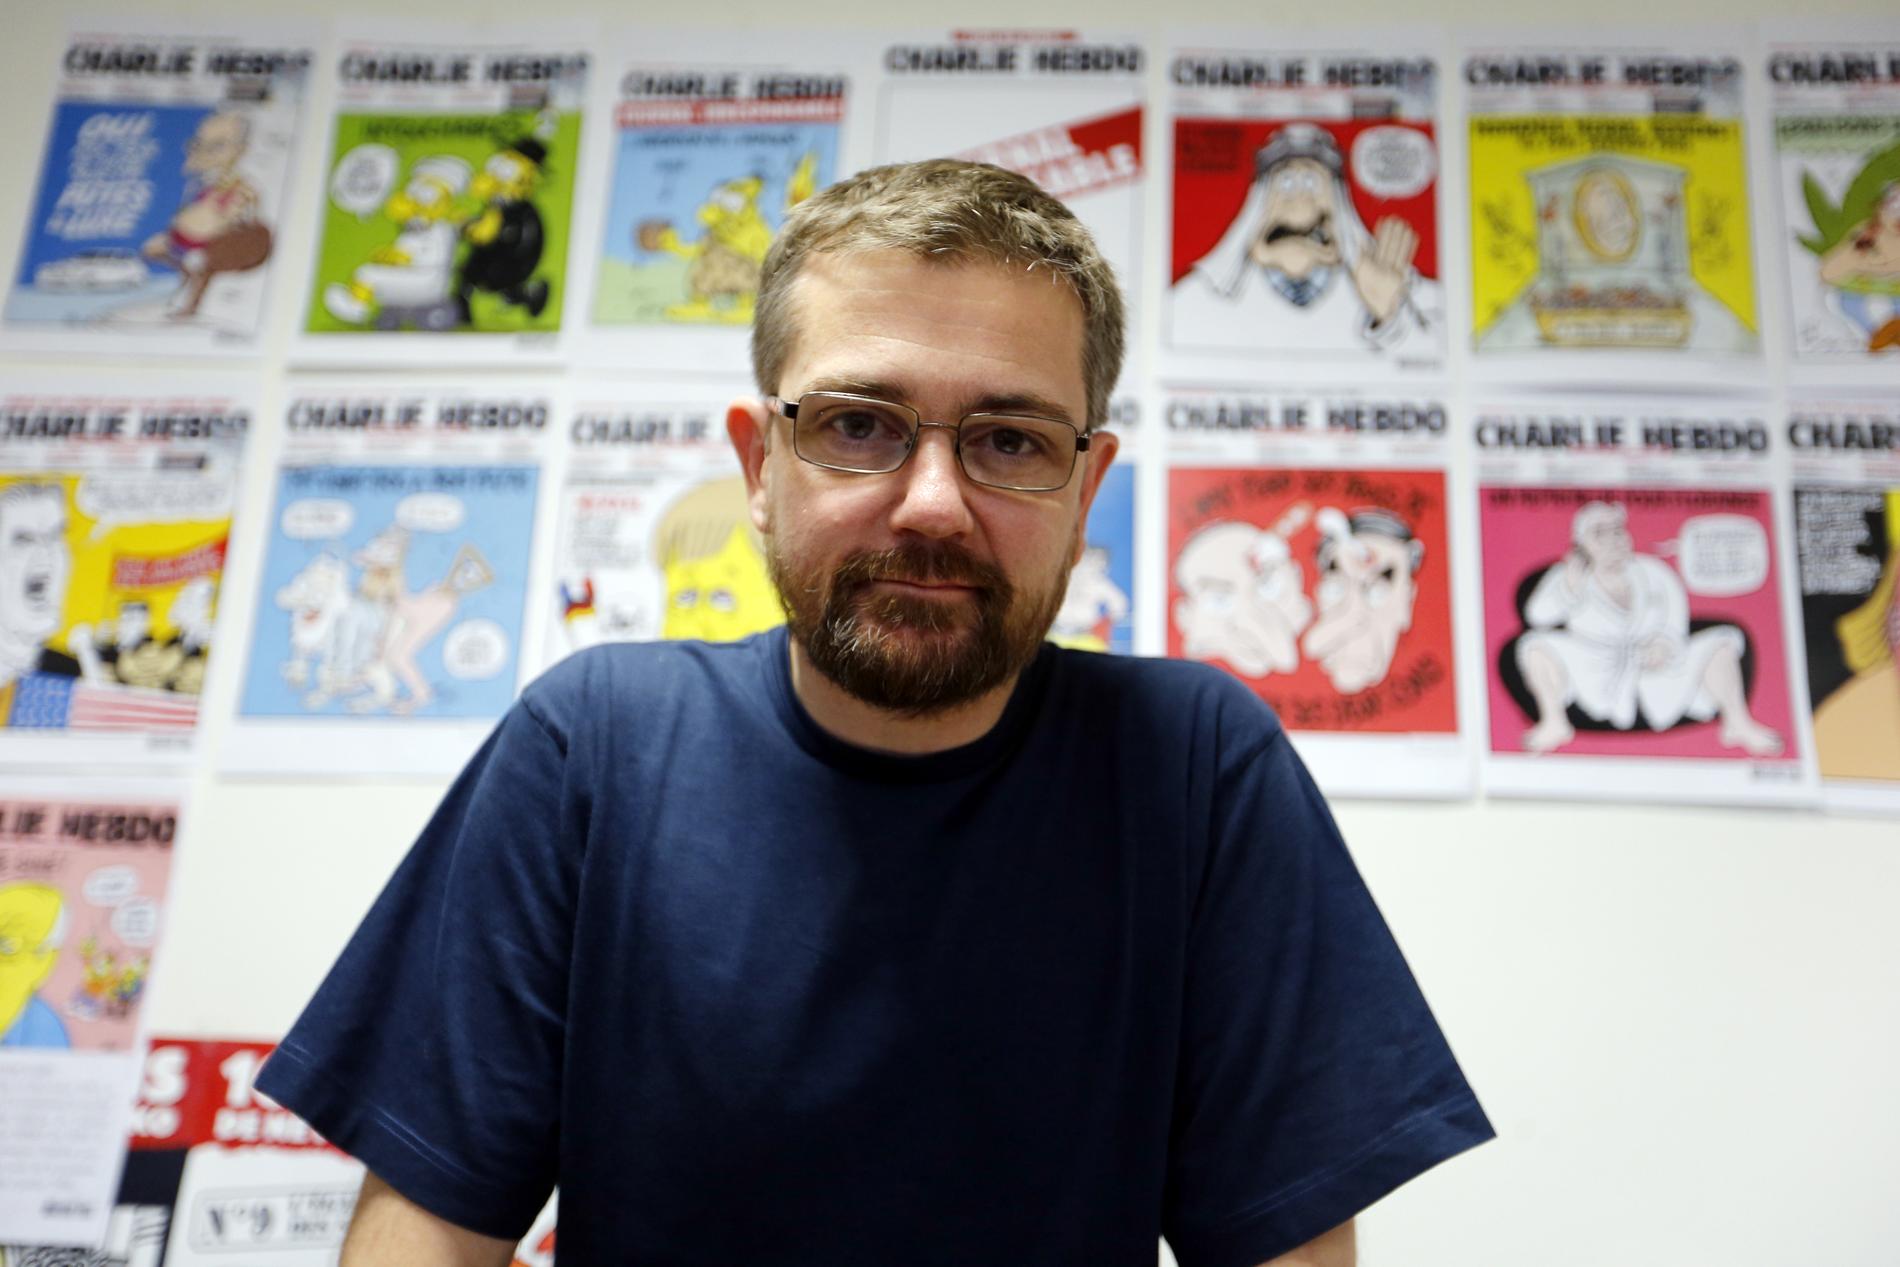 Satirtecknaren Stephane Charbonnier kallad "Charb"ett av offren i attacken.